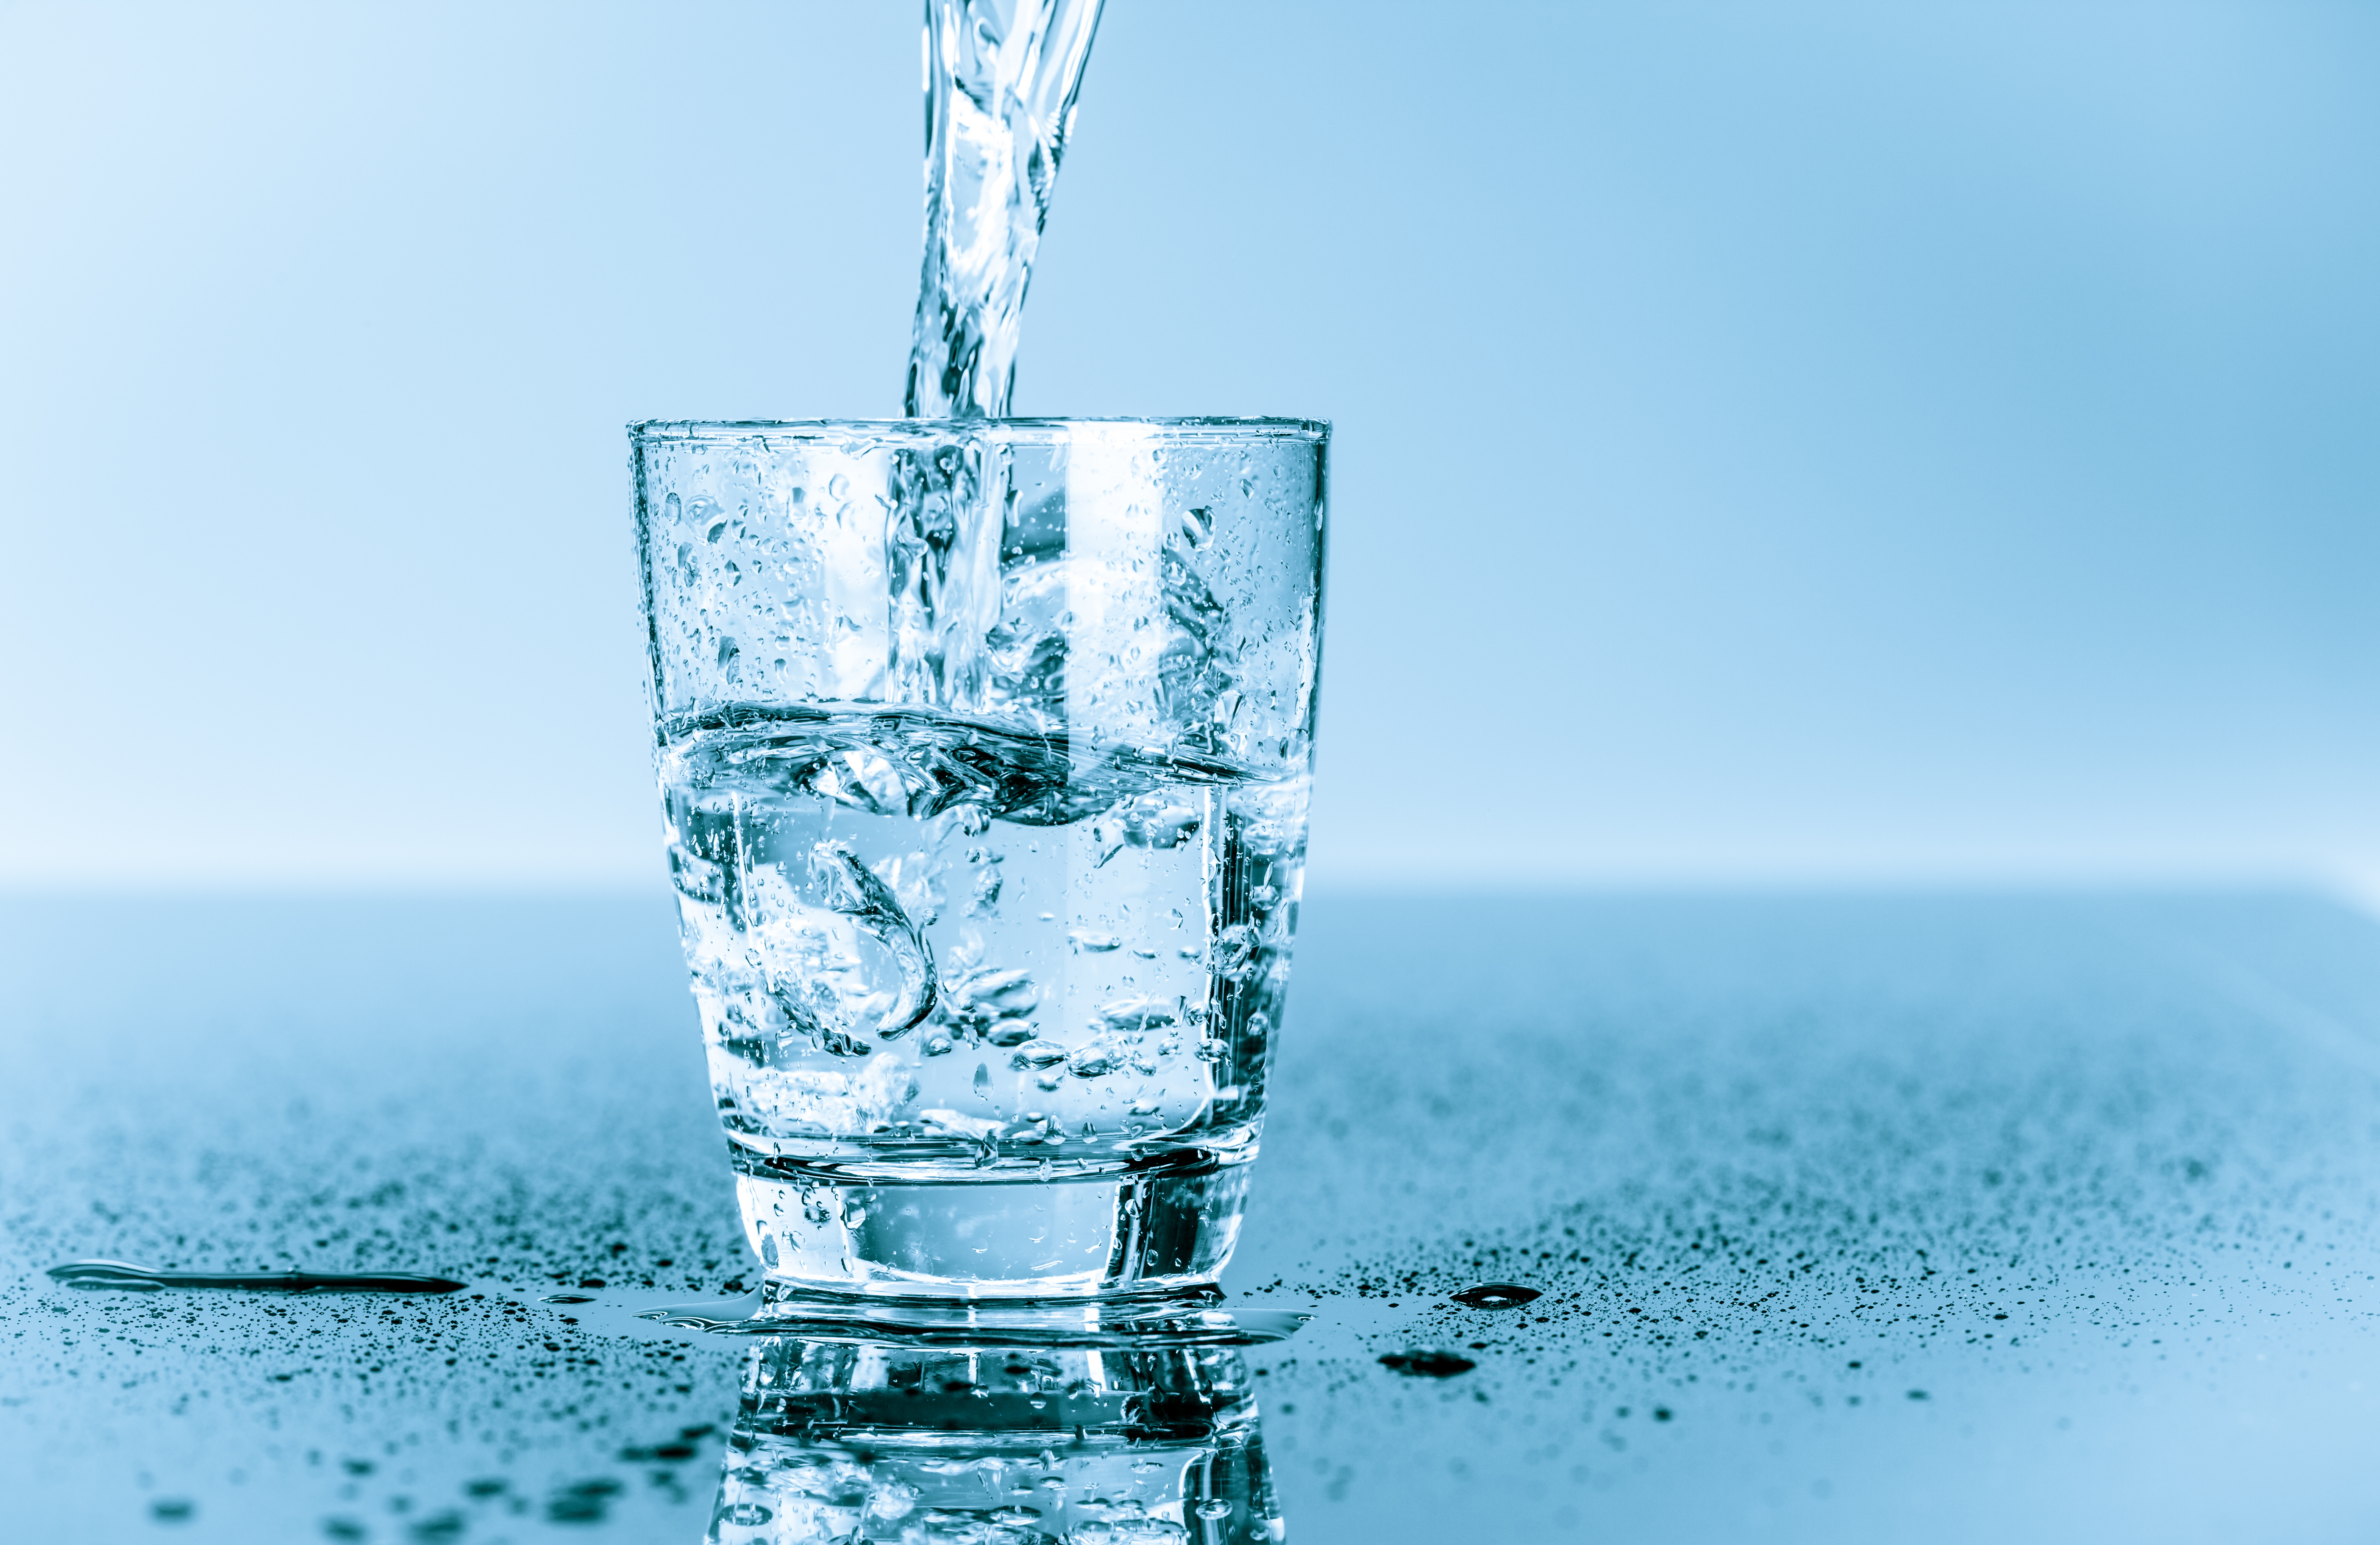 CONEL klärt auf: Normen und Regelwerke für sauberes Trinkwasser